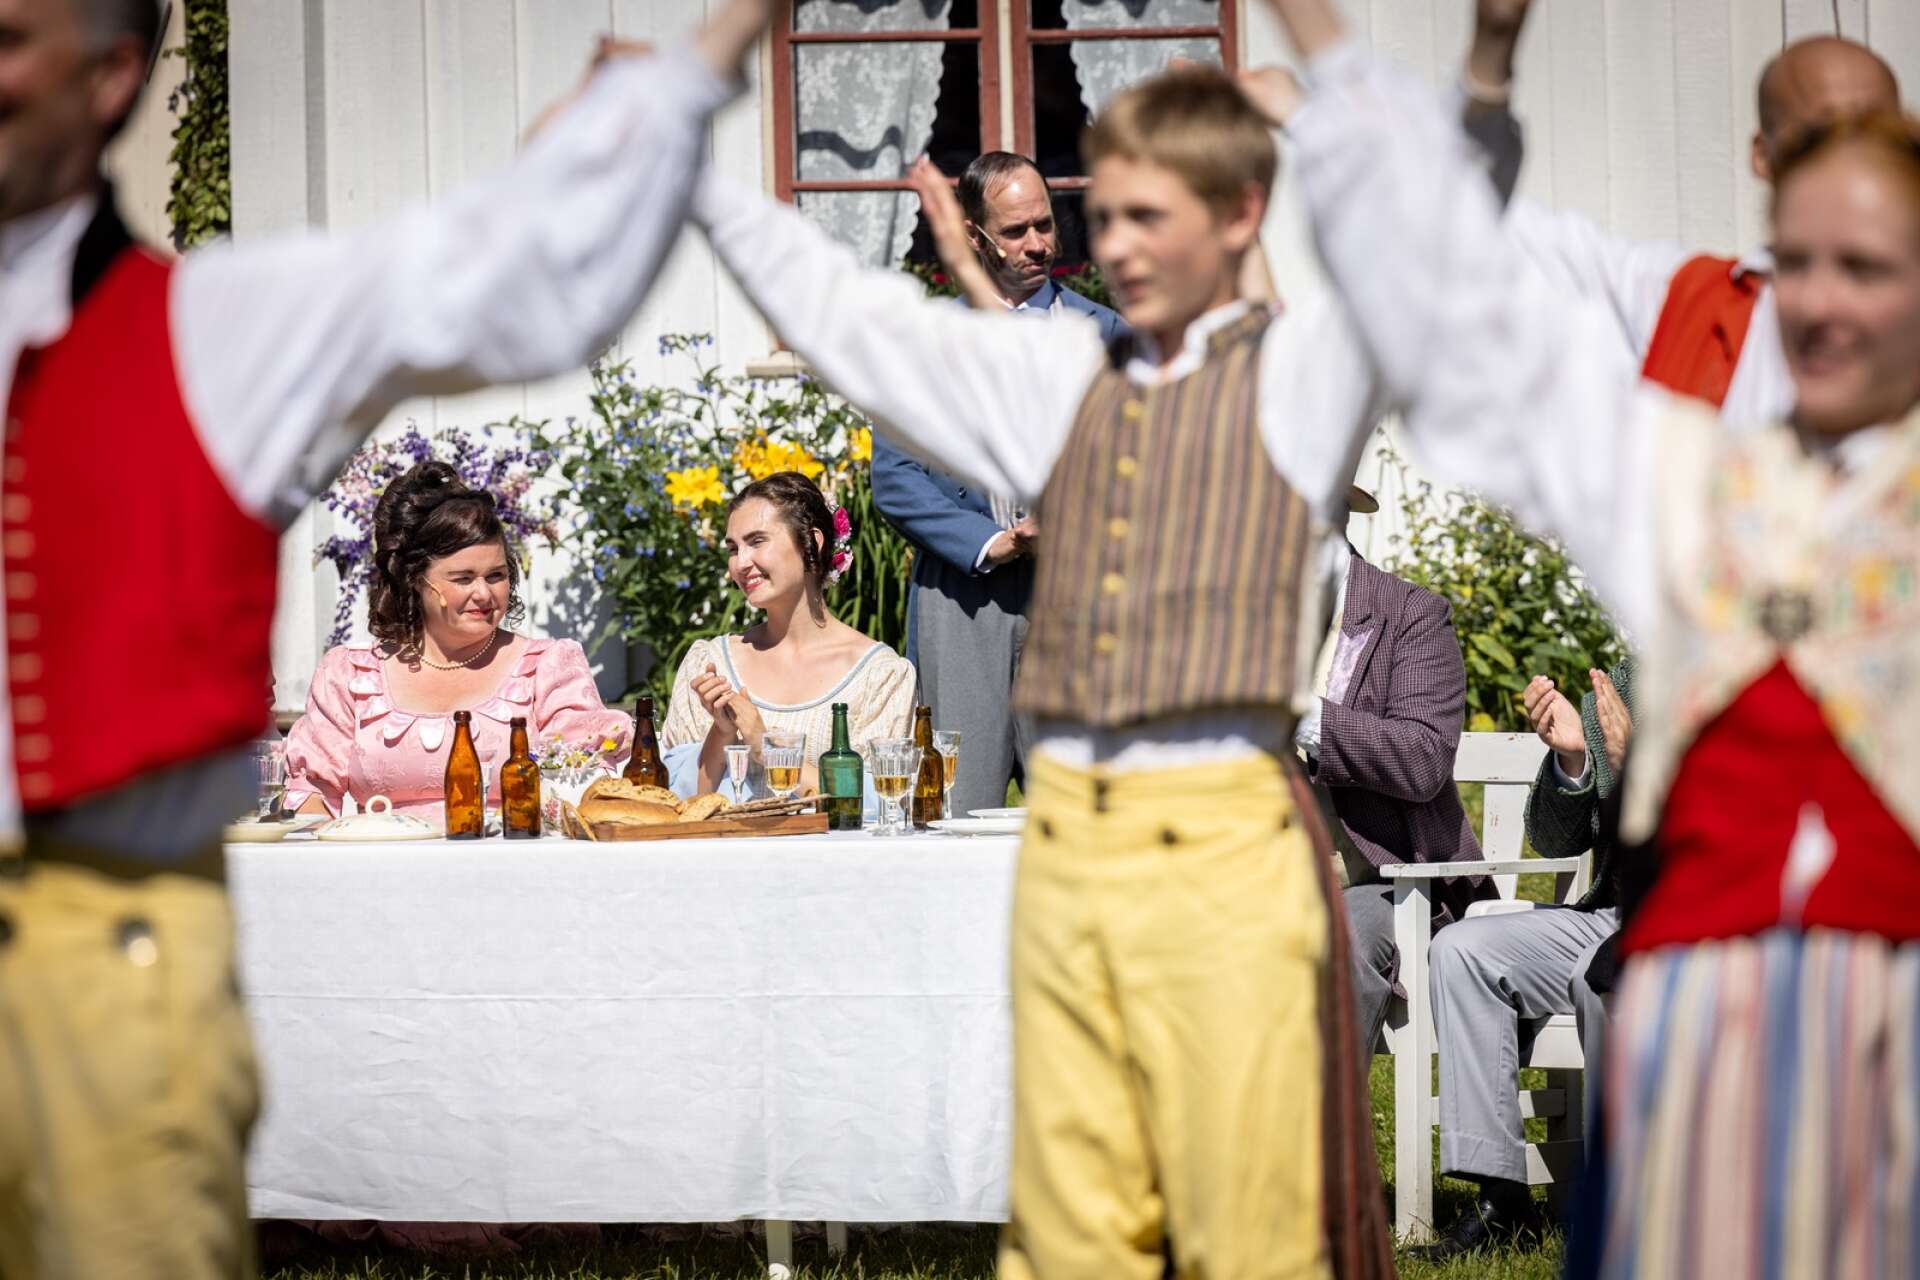 Midsommarfirande med fina mamseller och folkdans... men snart bryts den festliga stämningen när Erik förkunnar att han inte alls vill bli bortgift med Britta i Gyllby (Malin Persson Lunde).